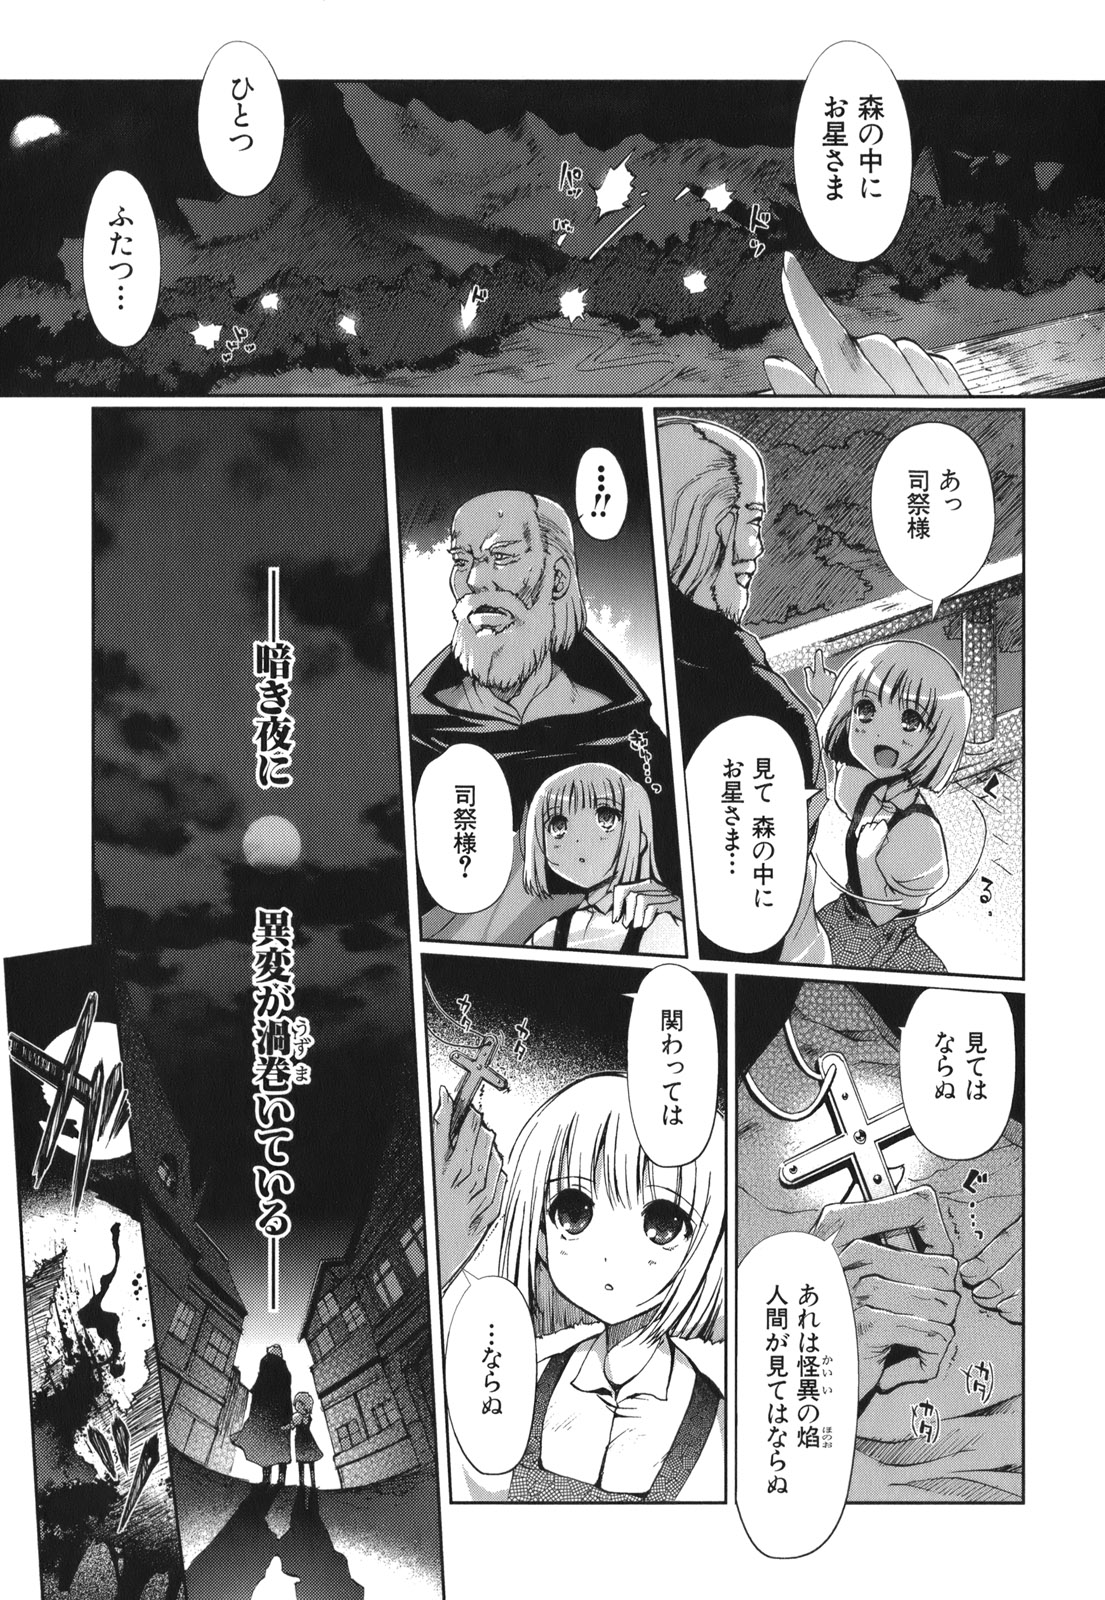 Shakugan no Shana X Eternal Song – Harukanaru Uta - Chapter 2 - Page 1